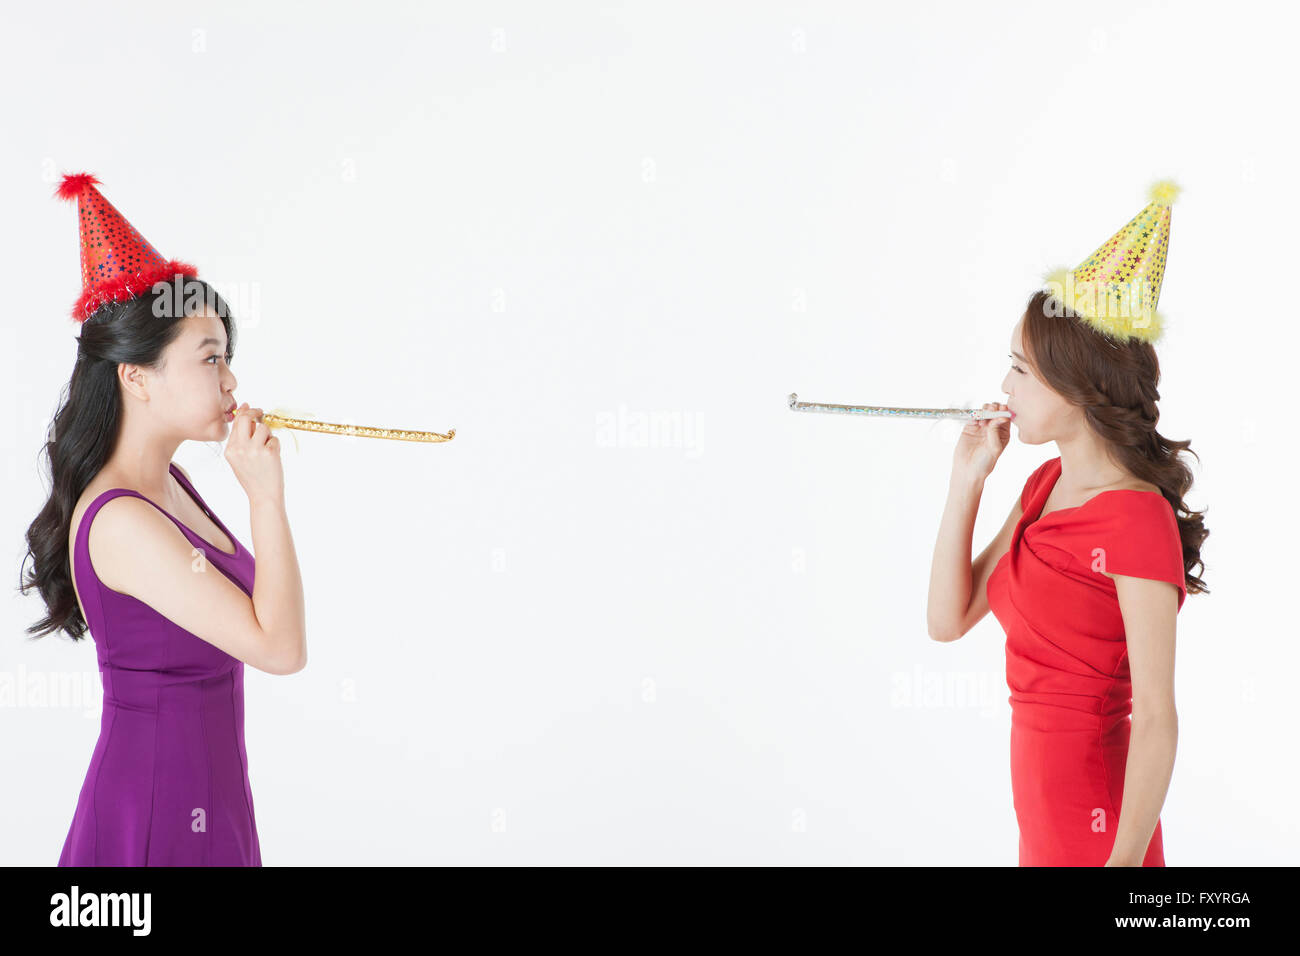 Portrait de deux jeunes smiling women blowing party horns face à face Banque D'Images